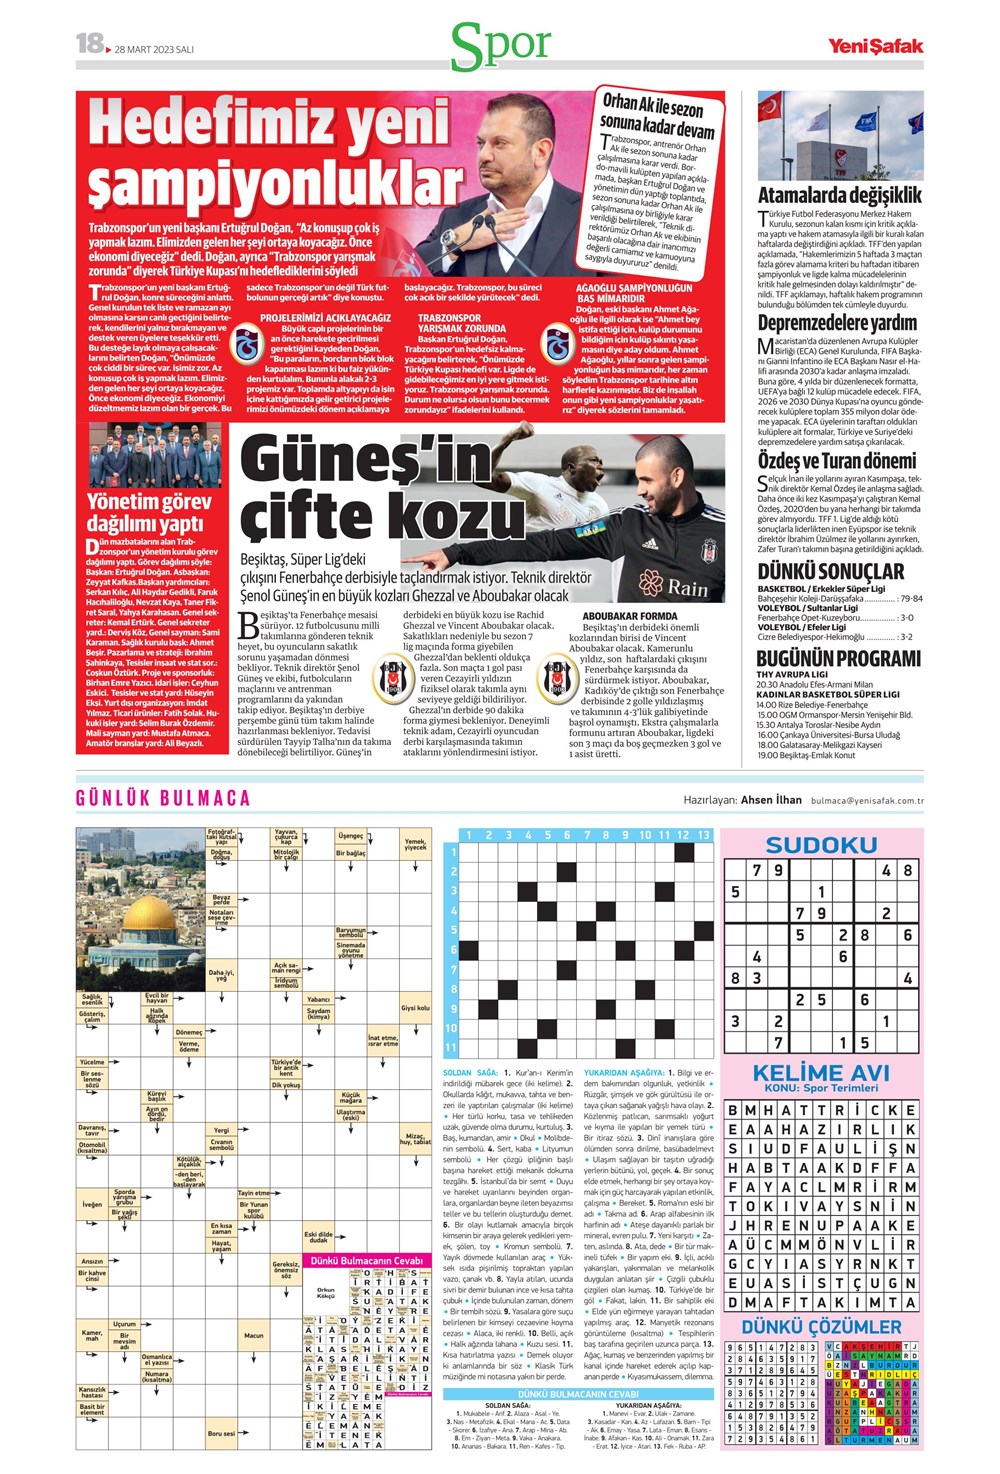 "Vurduğumuz gol olsun" - Sporun manşetleri - 34. Foto